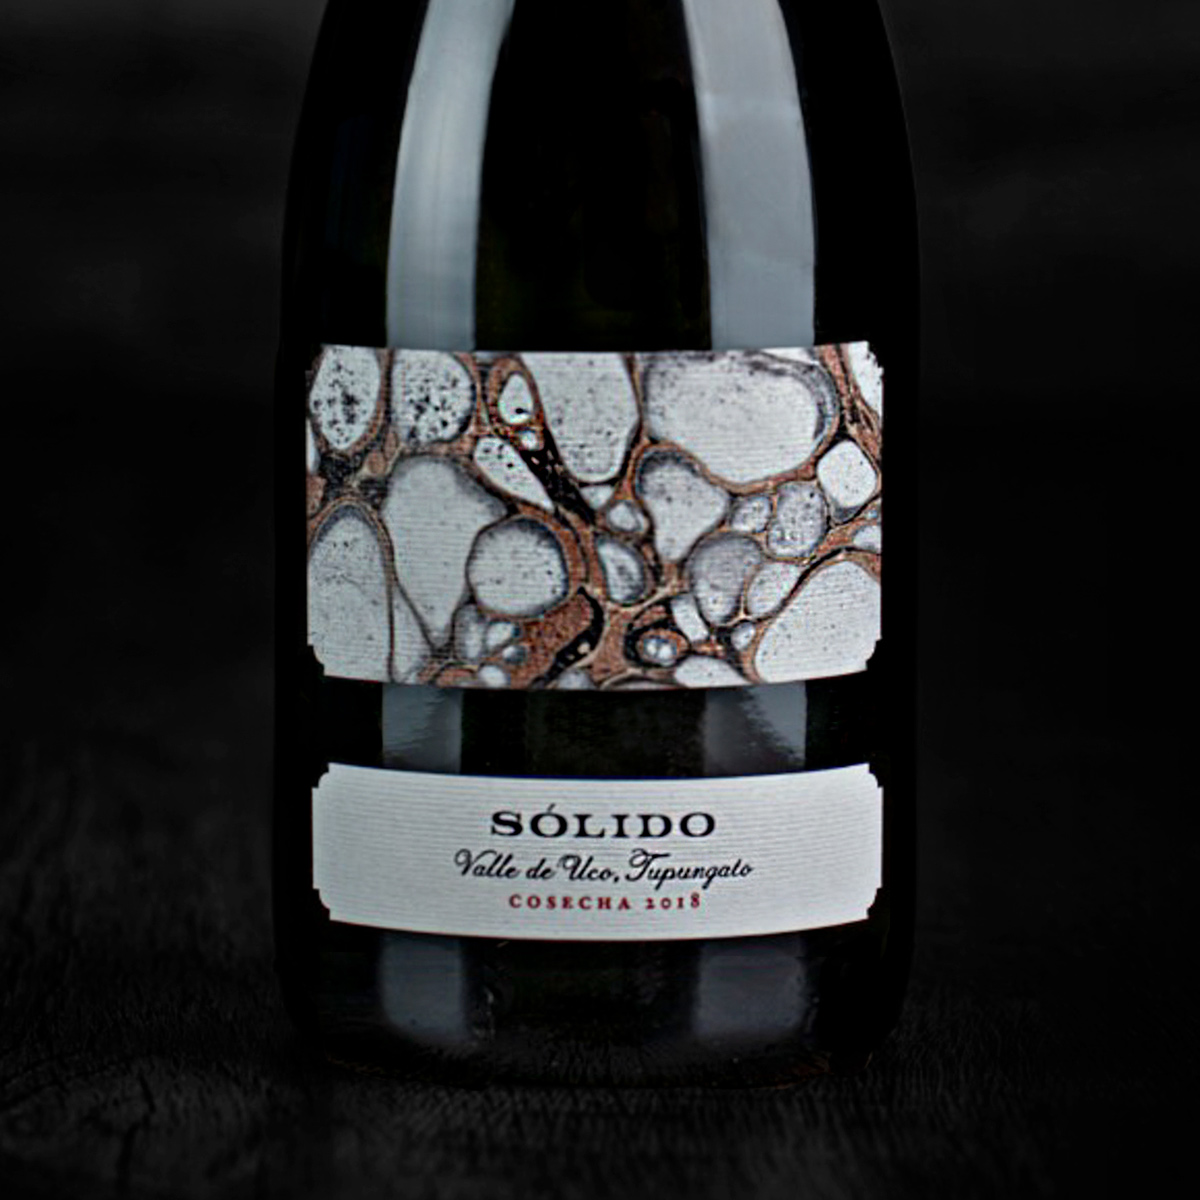 Wine label design Solido Sitio La Romain Caos Matias Michelini Mendoza Argentina